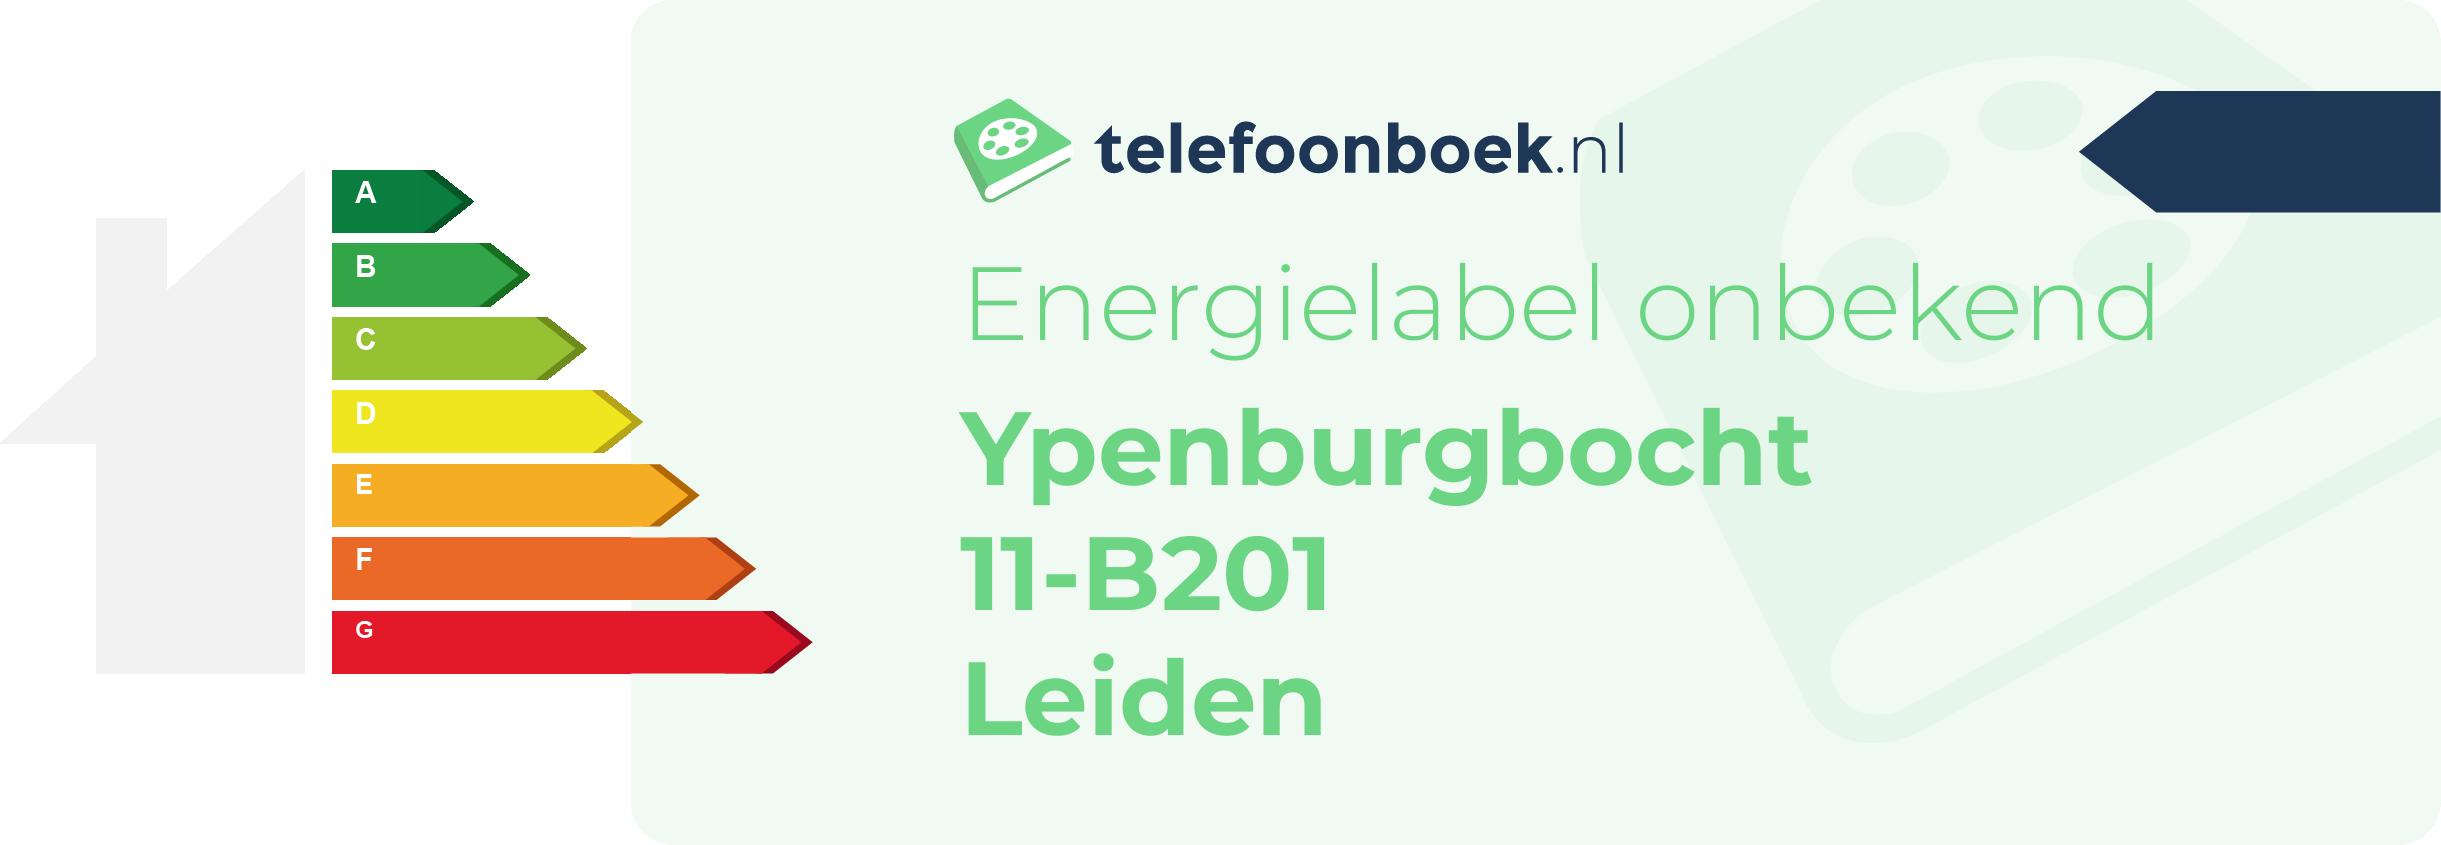 Energielabel Ypenburgbocht 11-B201 Leiden